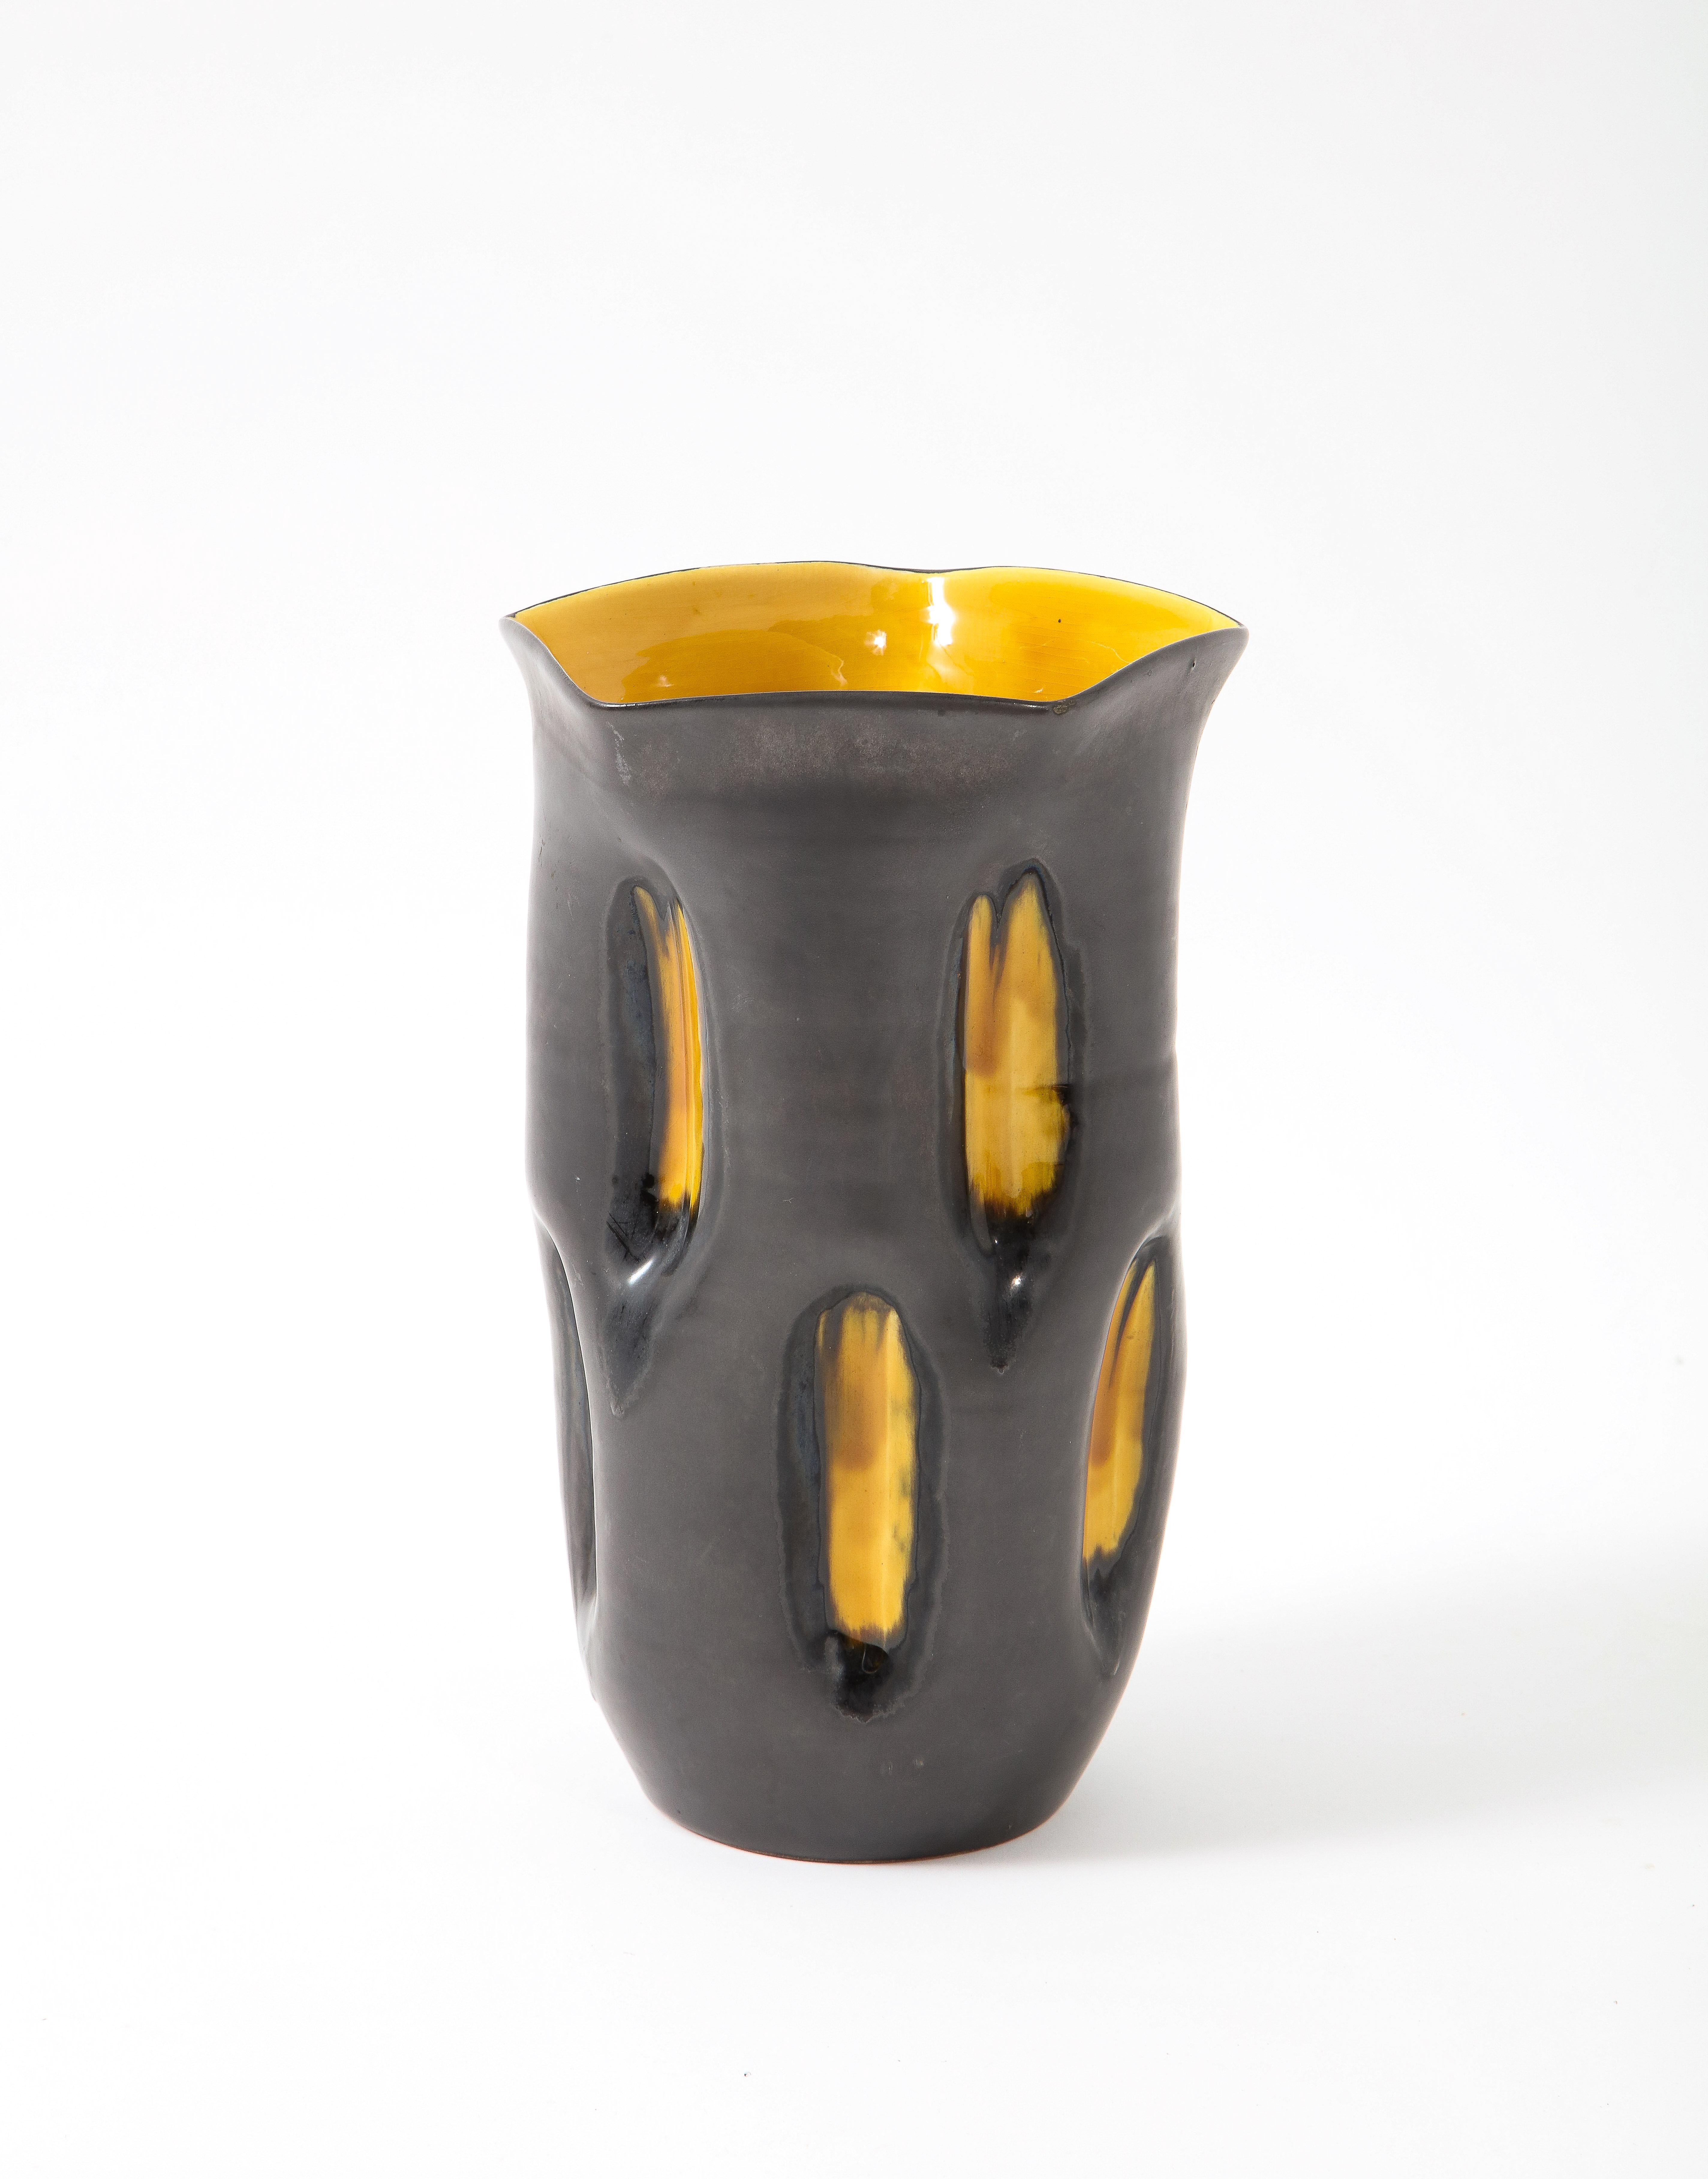 Vase fantaisiste en céramique avec une glaçure à deux tons, gris canon de fusil pour le corps et jaune brillant pour les creux de la surface et de l'intérieur.